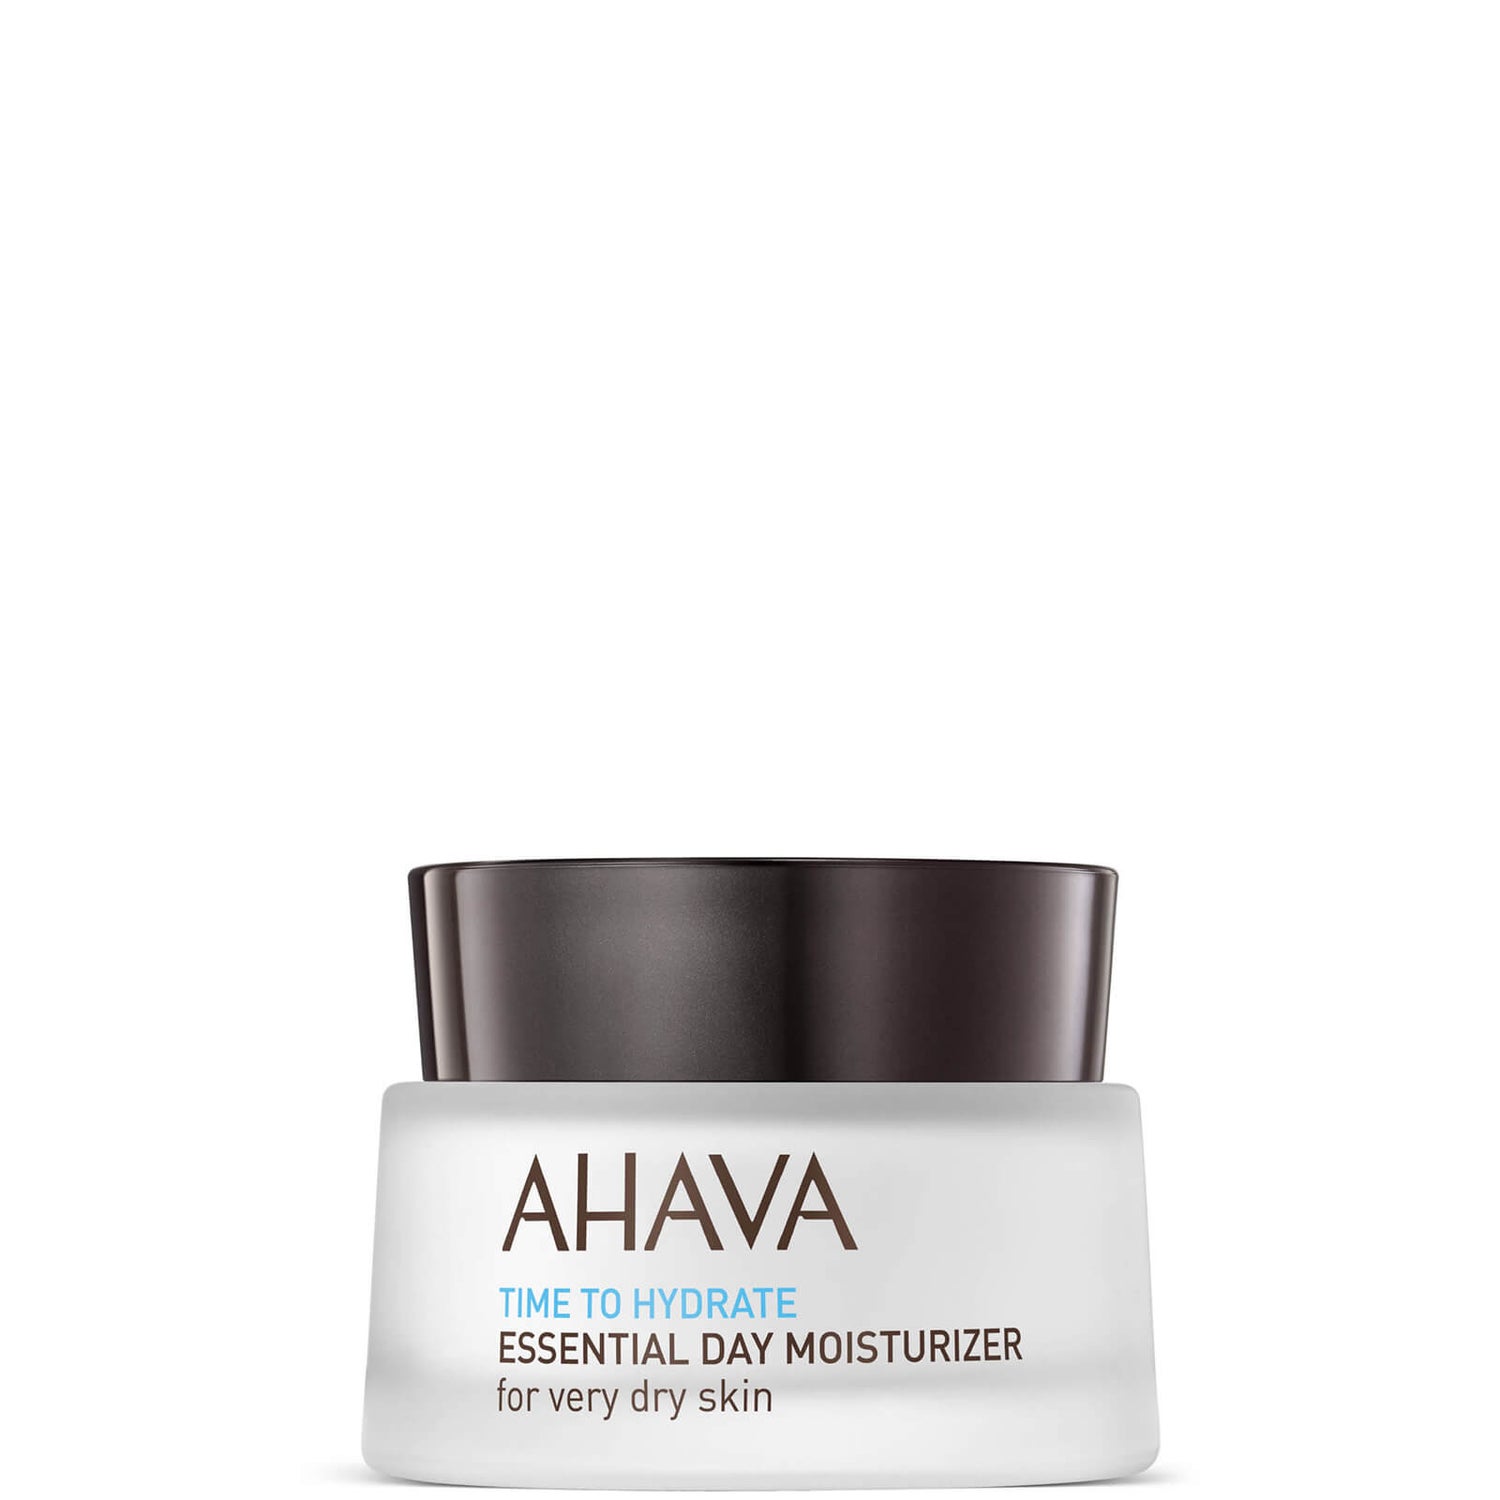 Незаменимый увлажняющий крем для очень сухой кожи AHAVA Essential Day Moisturizer Very Dry 50 мл